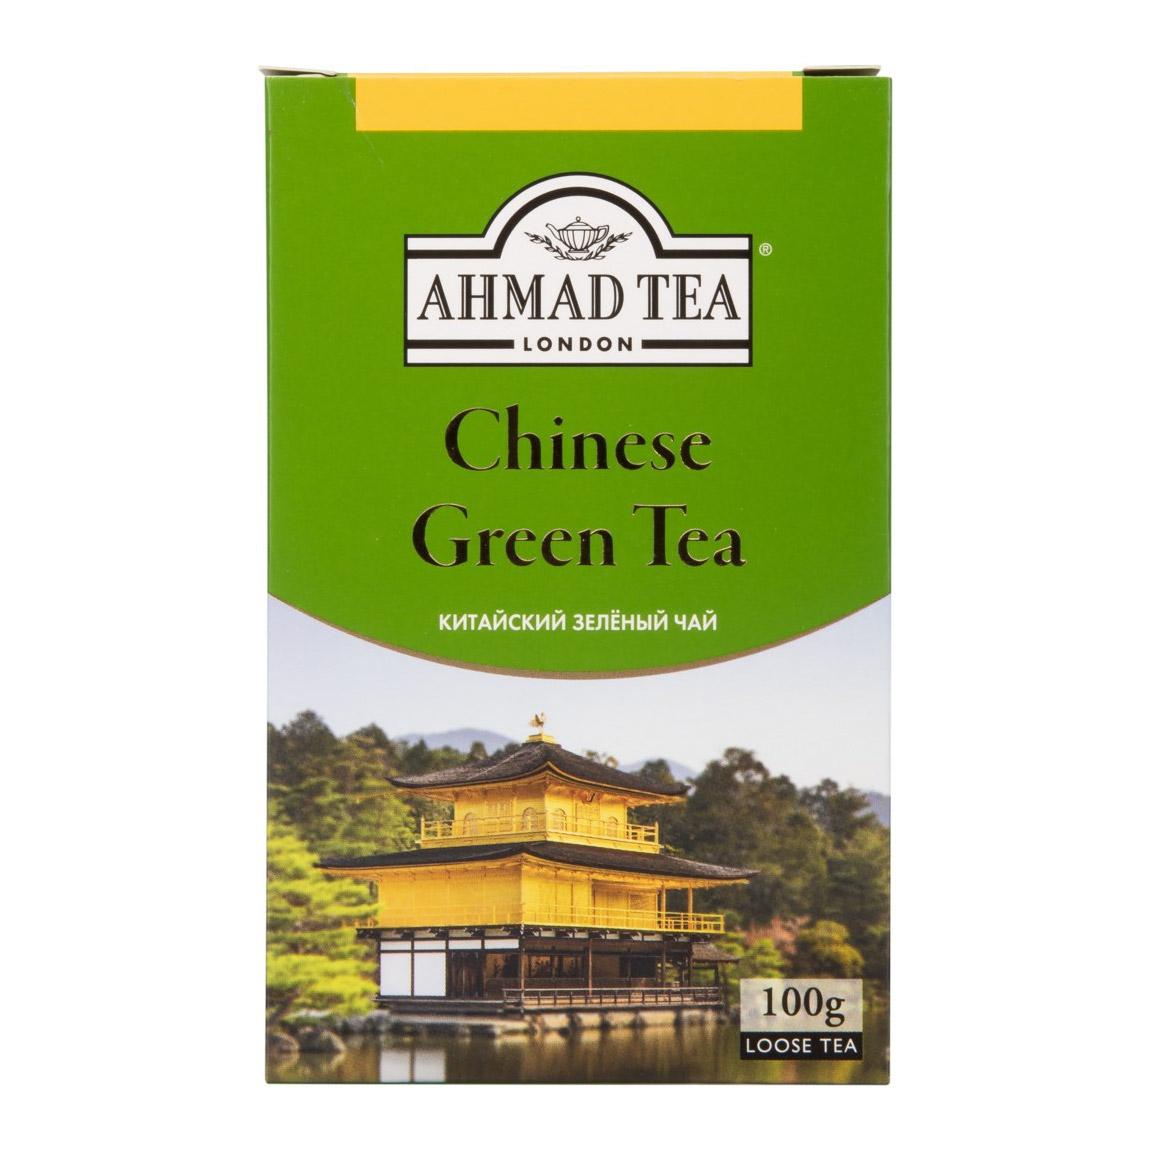 Чай Ahmad Tea Chinese Green зеленый 100 г ahmad ахмад английский завтрак листовой 200гр